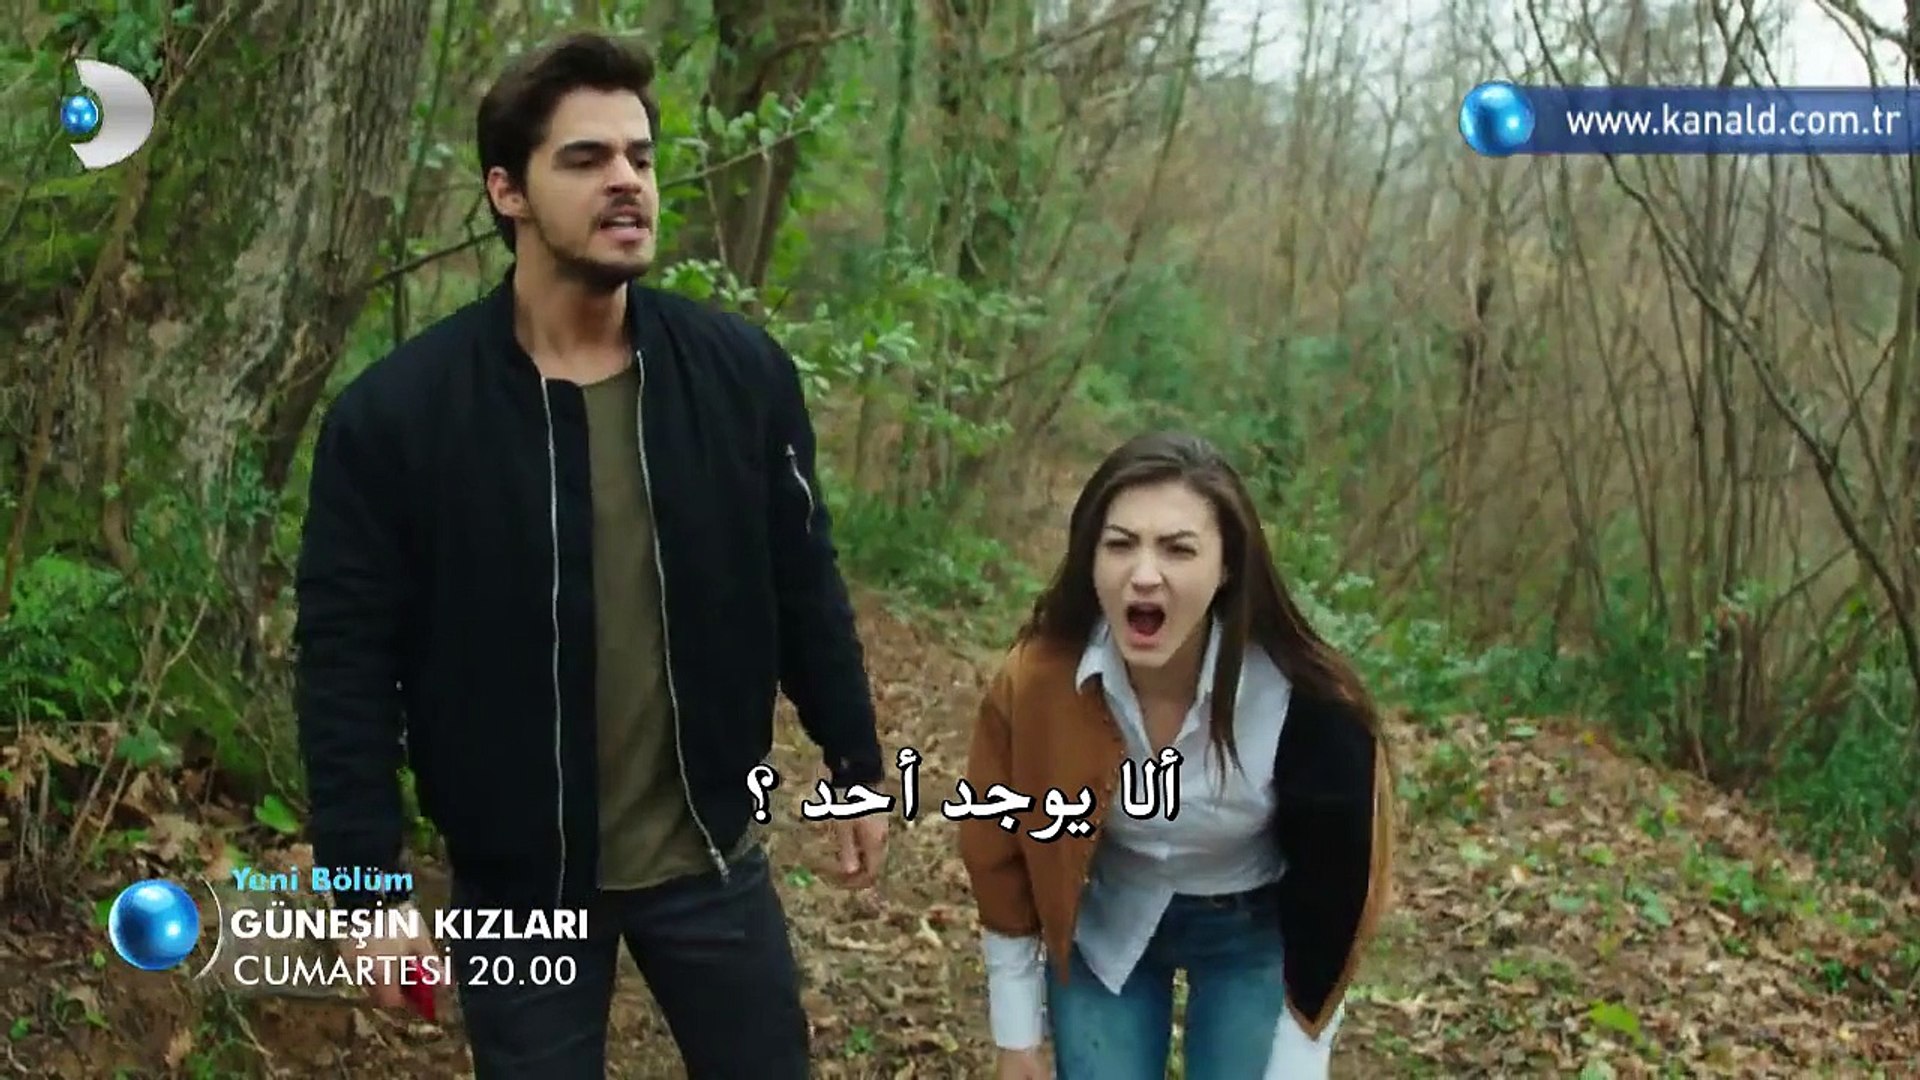 مسلسل بنات الشمس Güneşin Kızları - إعلان (2) الحلقة 36 مترجم للعربية -  فيديو Dailymotion